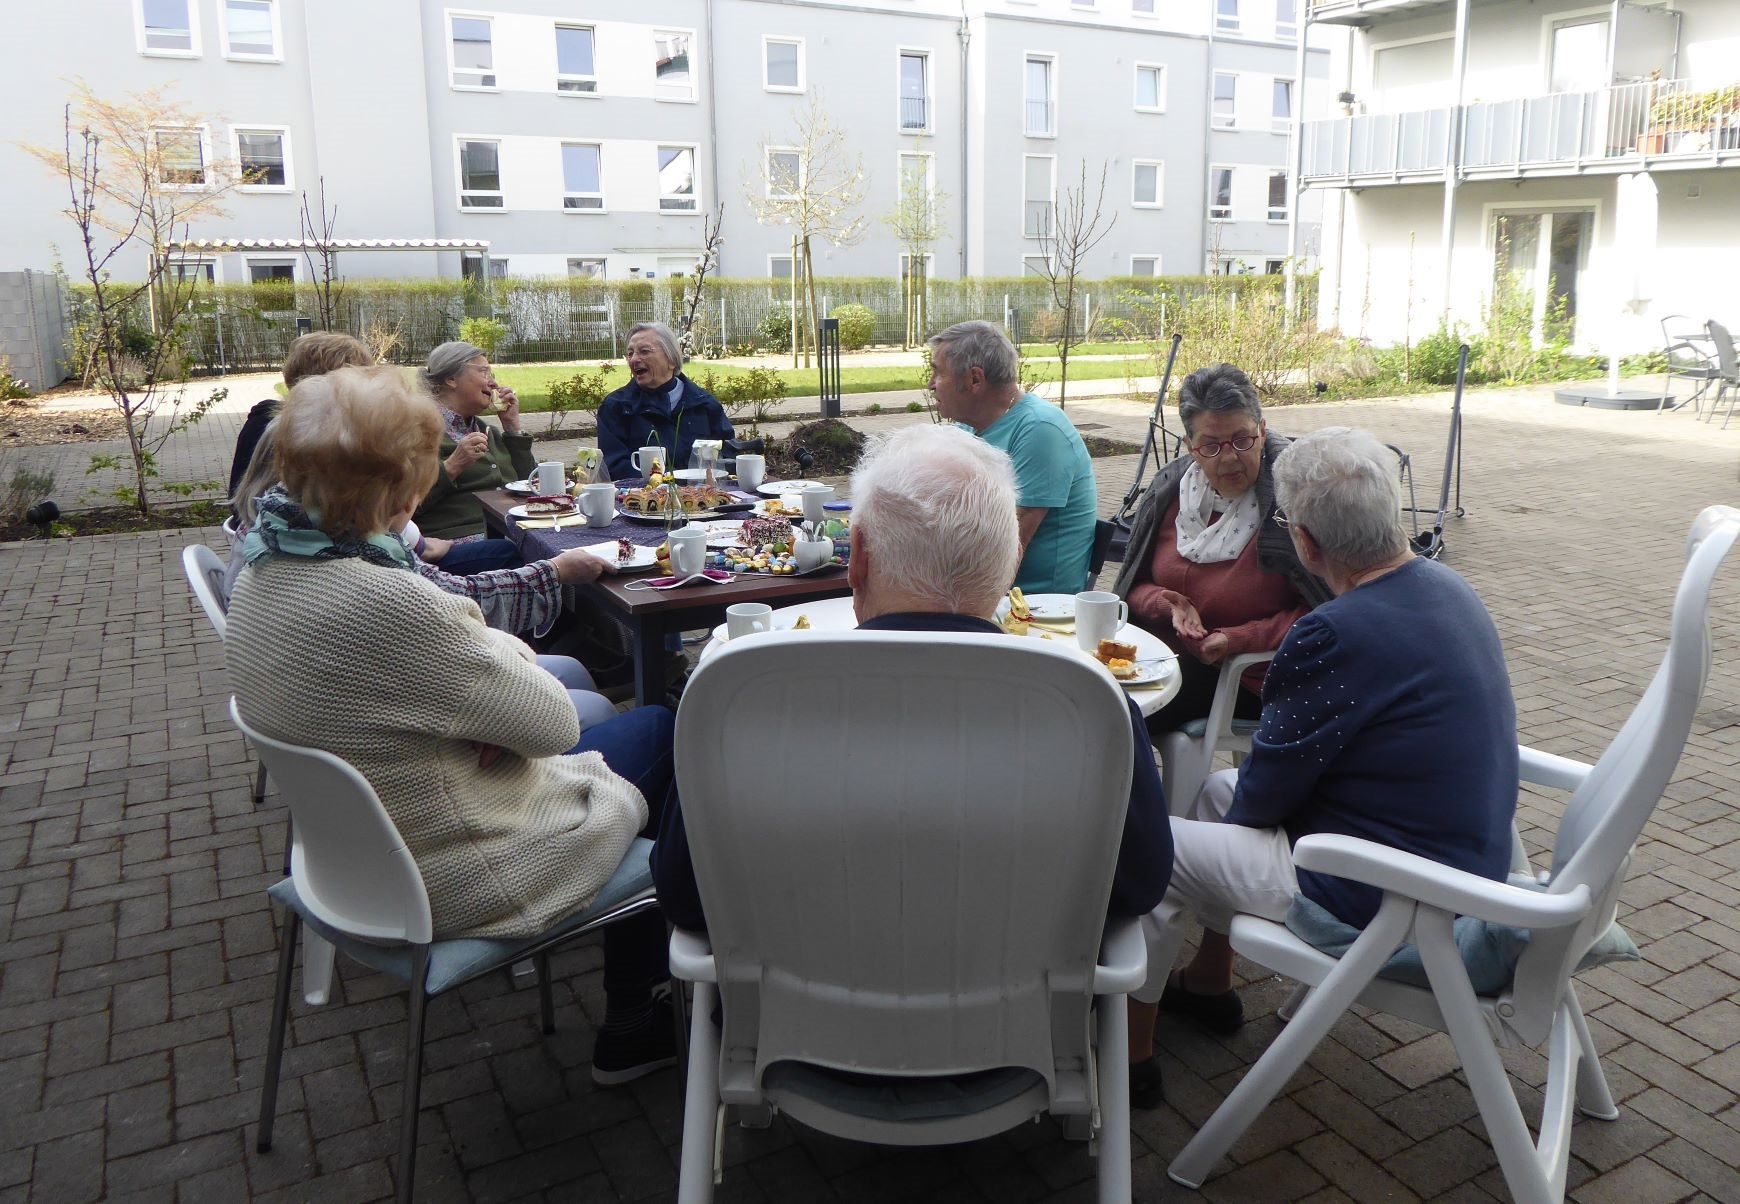 Bildmotiv zeigt Gruppe von Senioren im Aussenbereich um einen Tisch sitzend